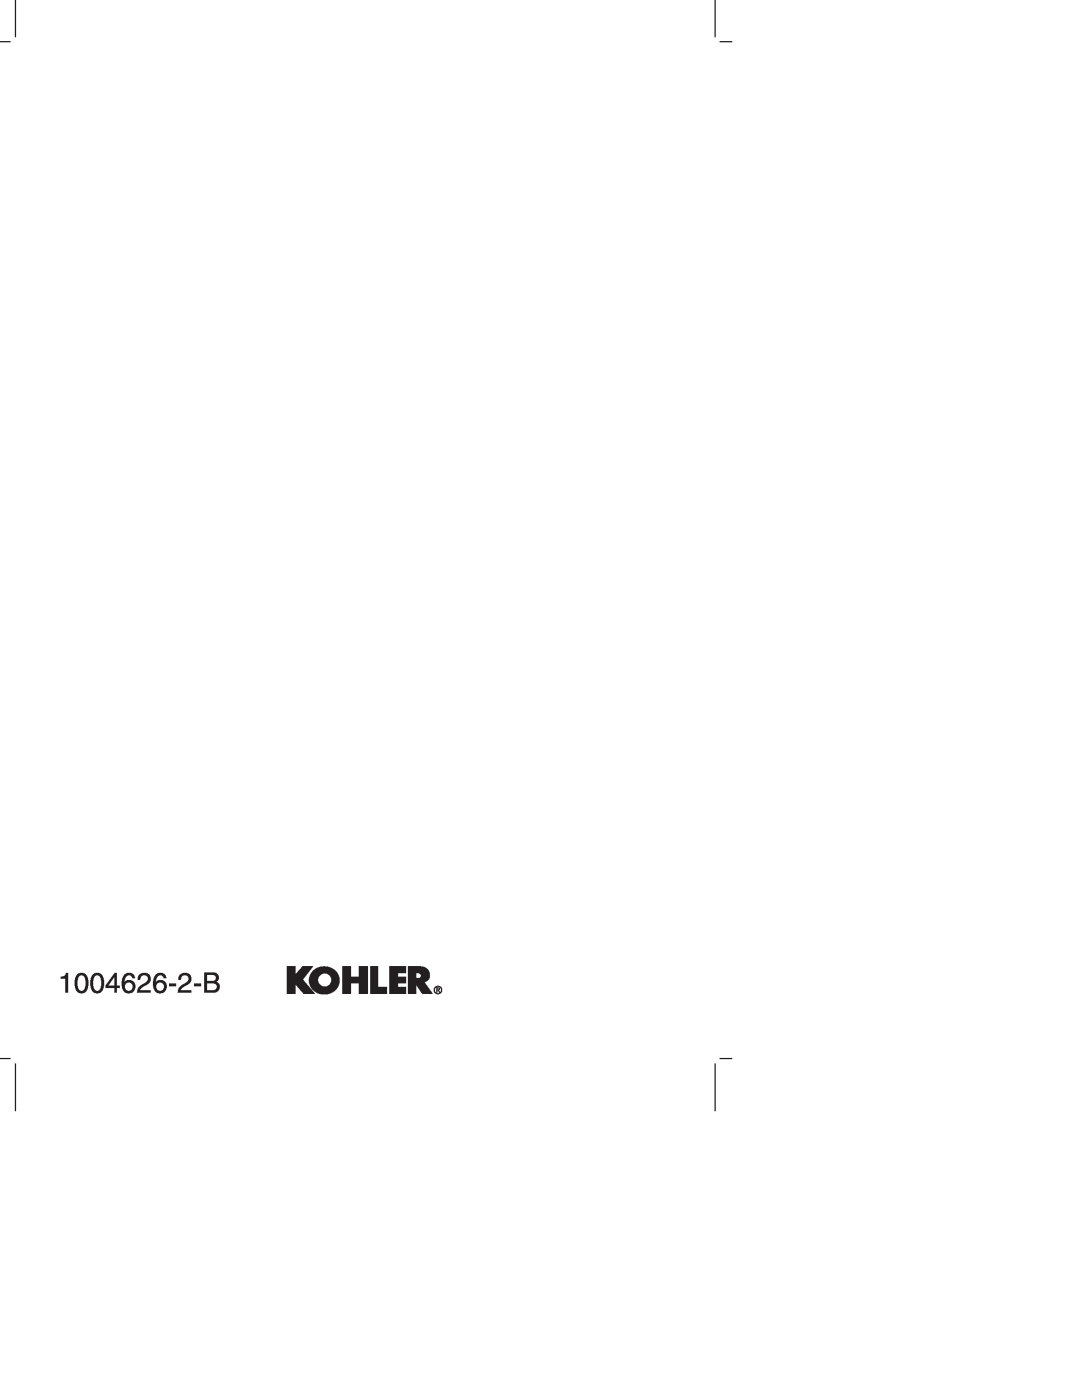 Kohler K-12177 manual 1004626-2-B 